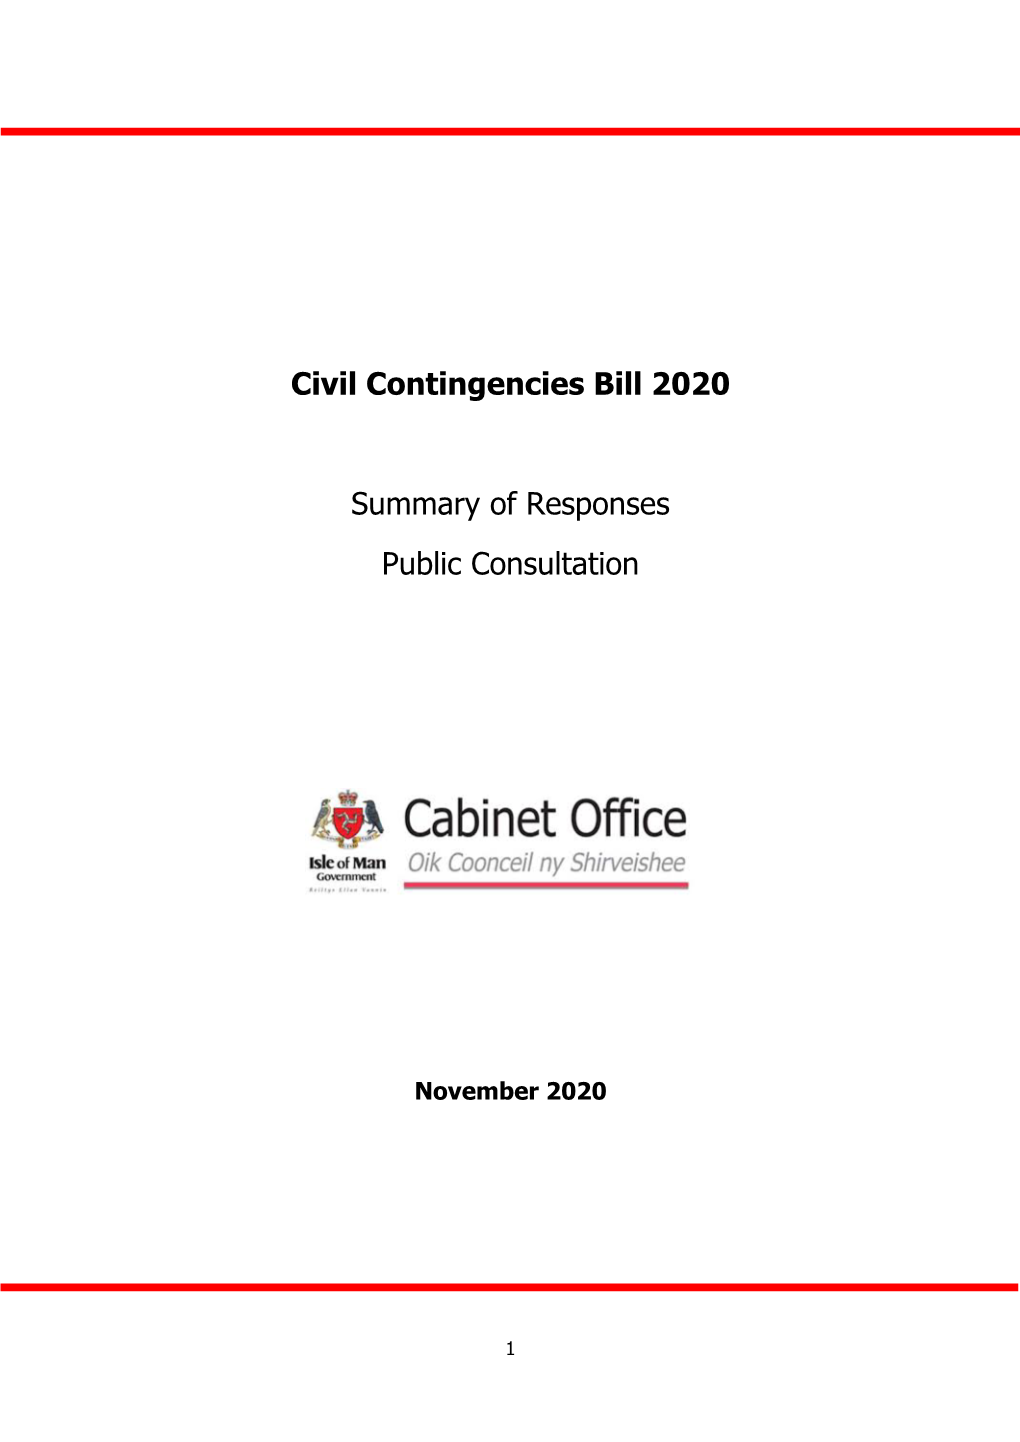 Civil Contingencies Bill 2020 Summary of Responses Public